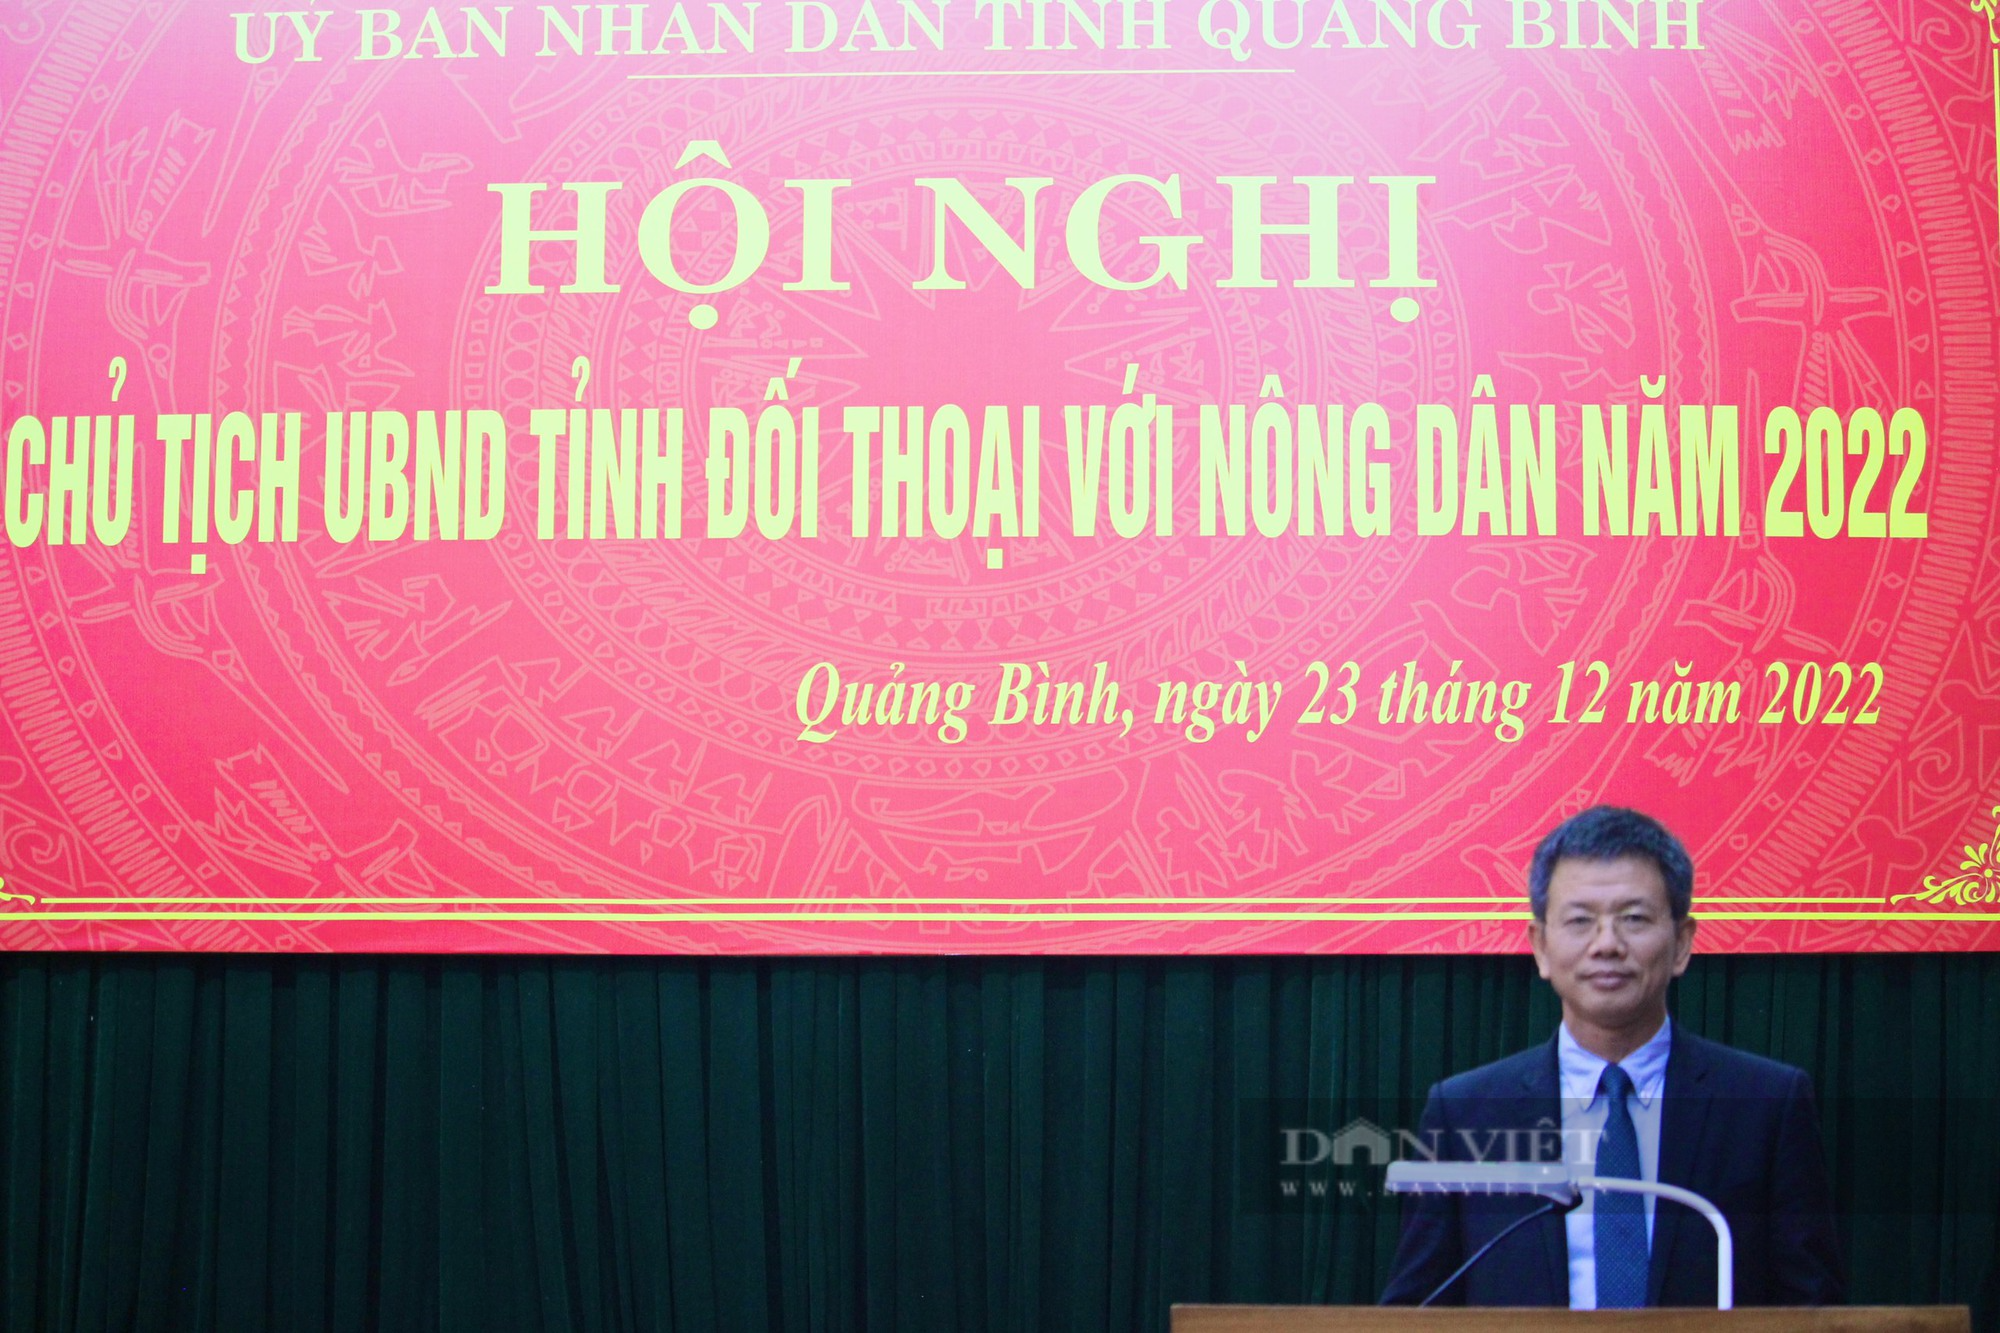 Chủ tịch UBND tỉnh Quảng Bình Trần Thắng đối thoại với nông dân năm 2022 - Ảnh 2.